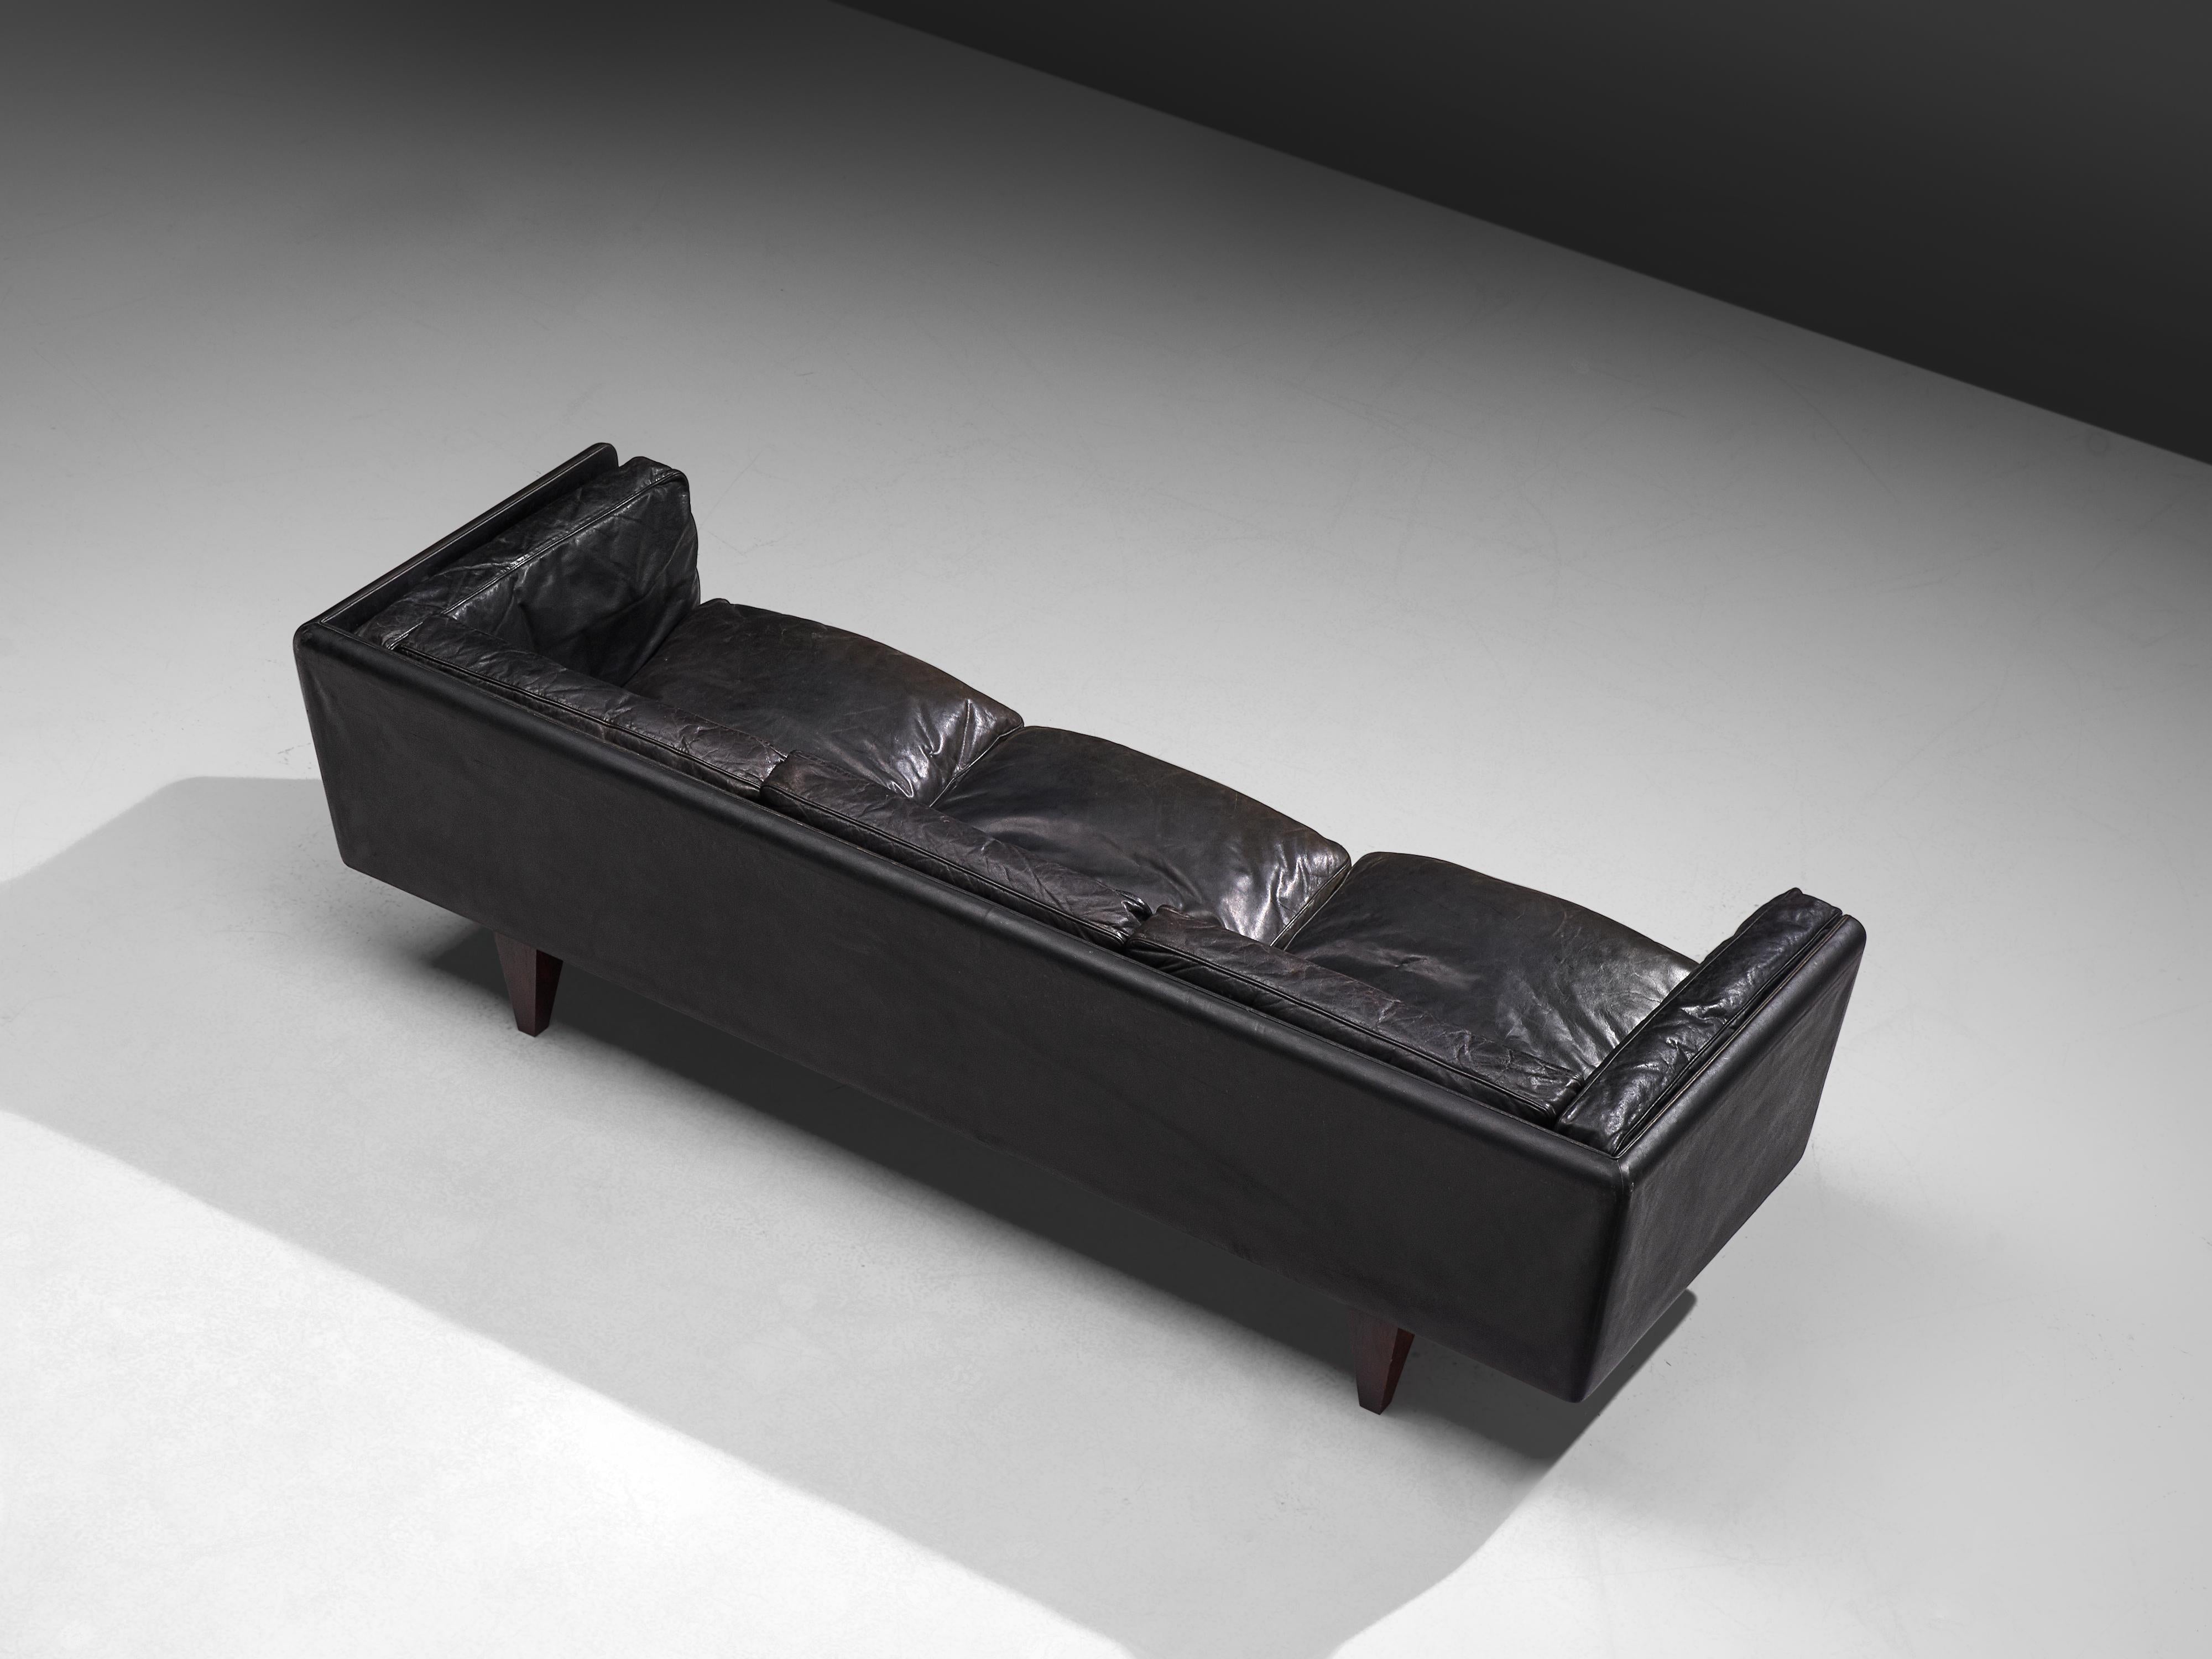 Mid-20th Century Illum Wikkelsø for Holger Christiansen Three-Seat Sofa 'V11' in Black Leather